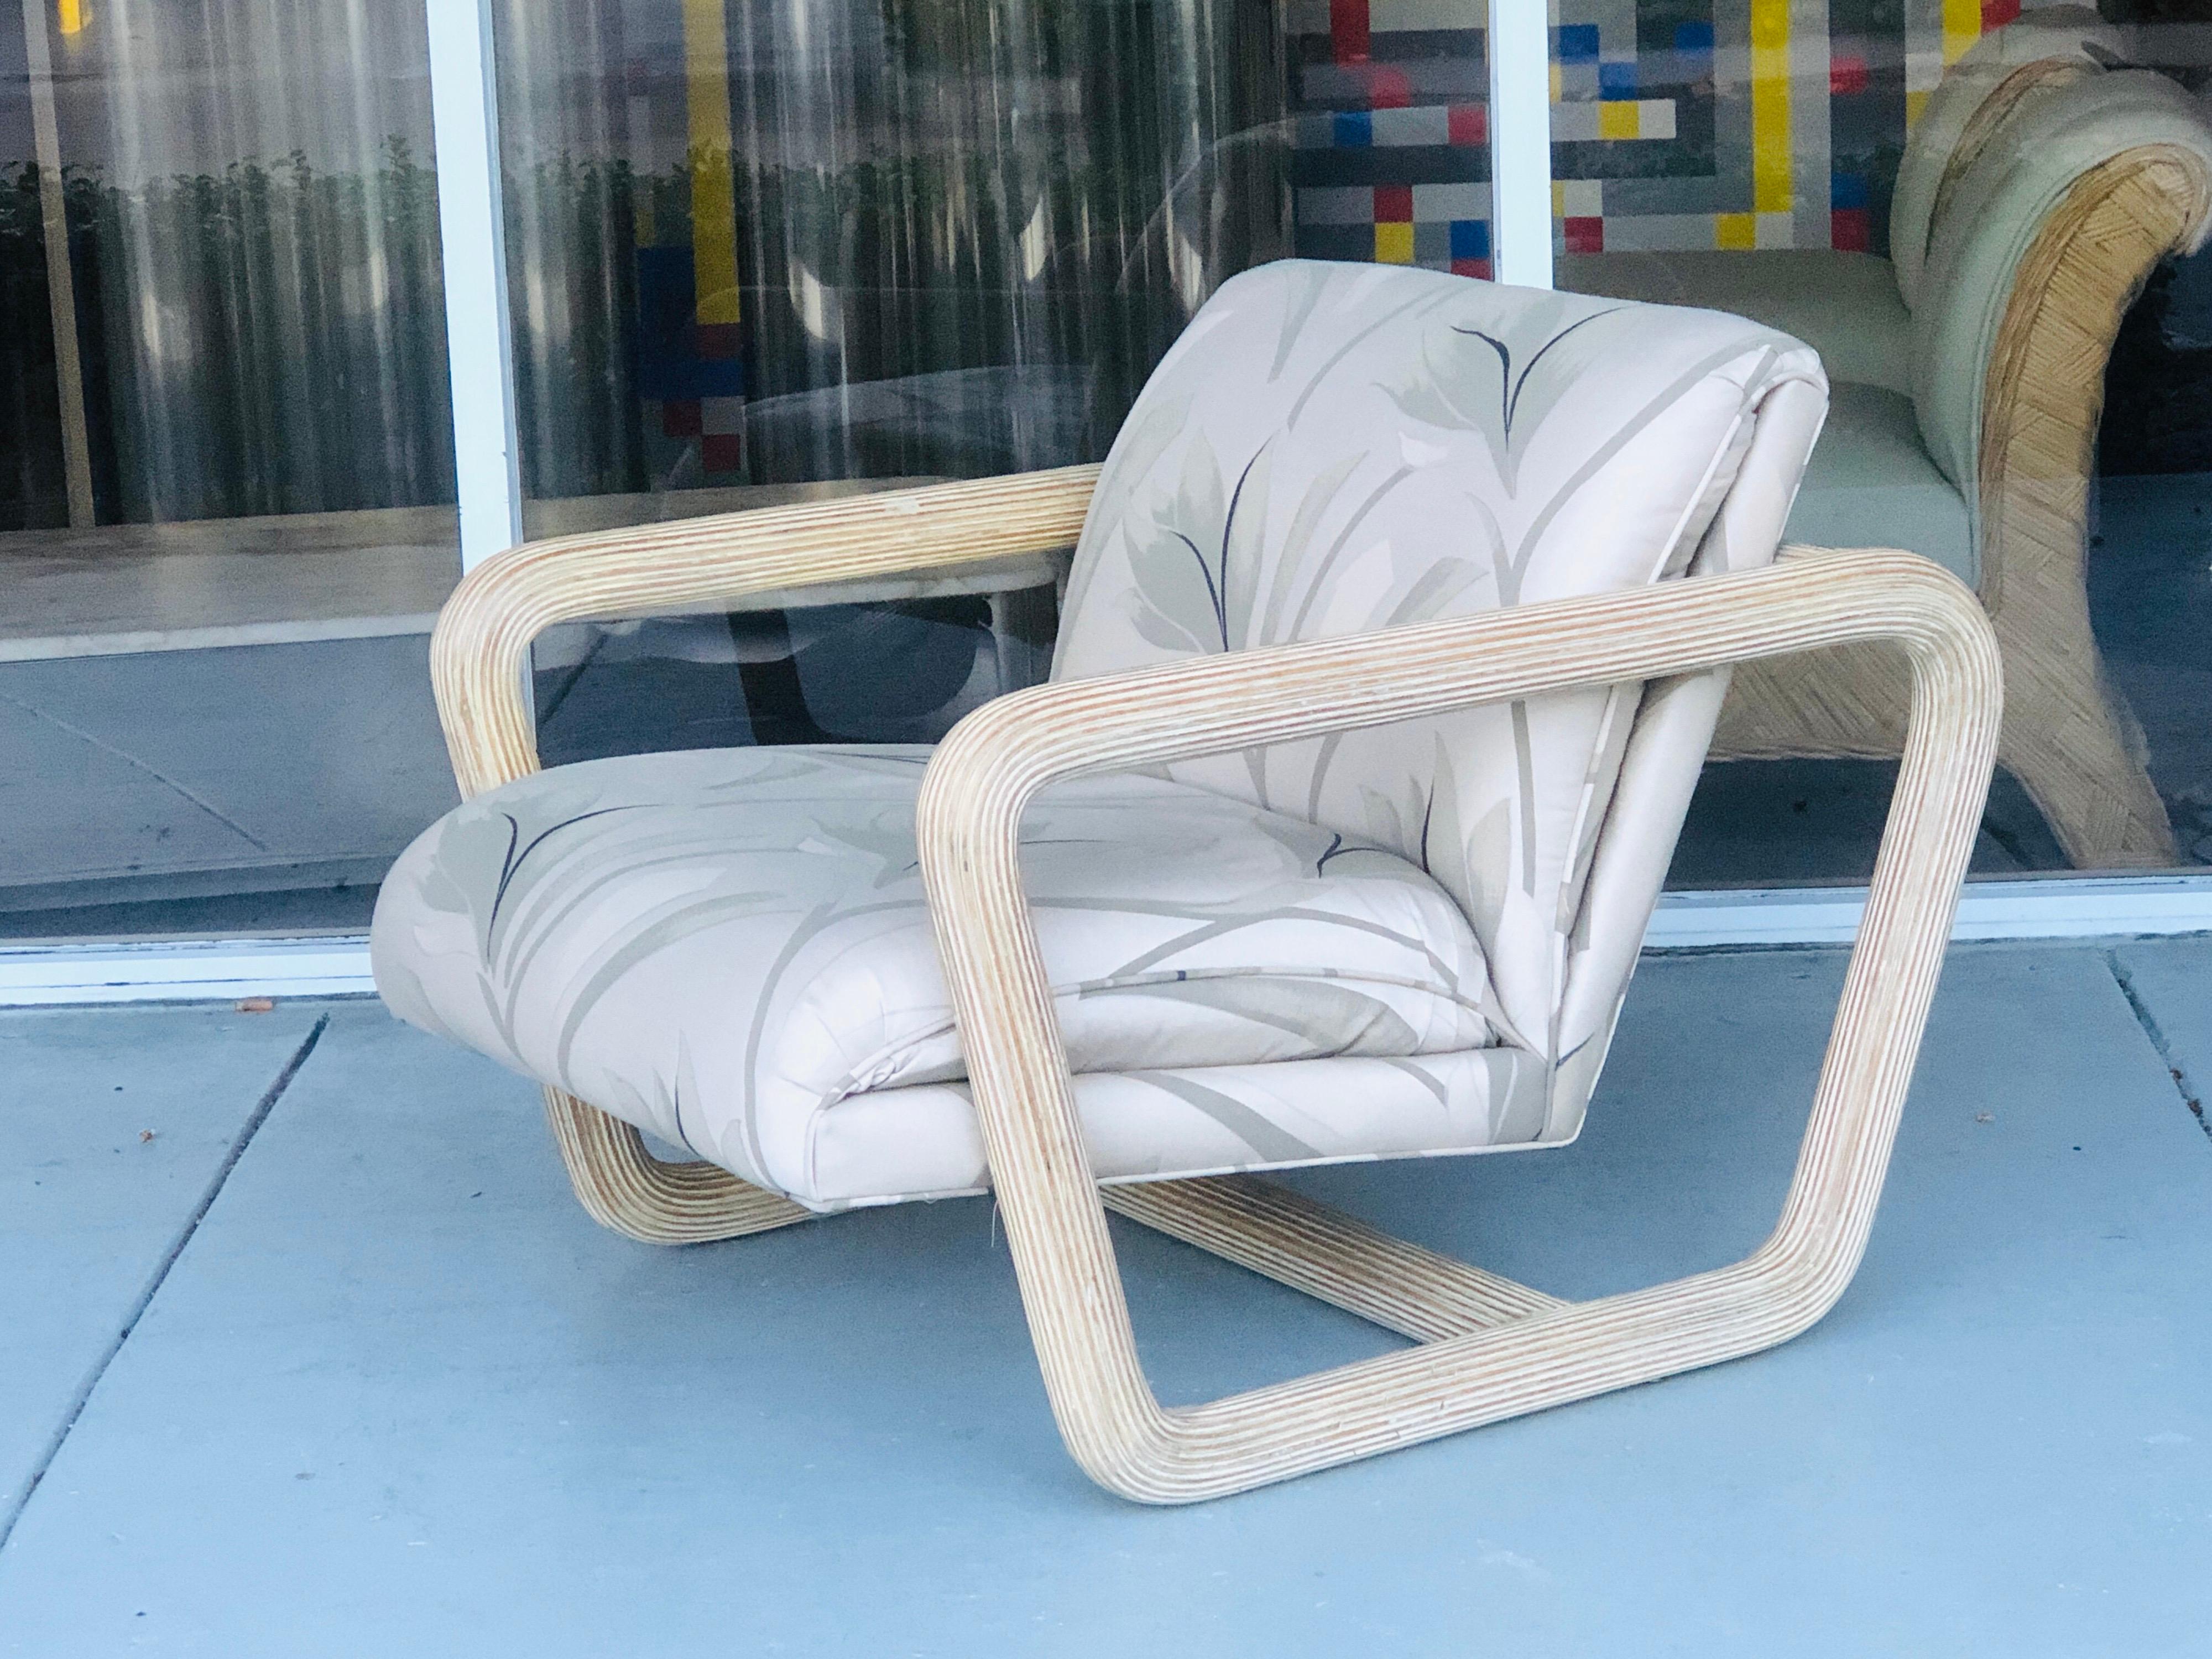 Ein schöner modernistischer Sessel aus den 1980er Jahren. Der aerodynamische Rahmen ist mit Bleistiftschilf verkleidet. Tropischer Modernismus in seiner besten Form.